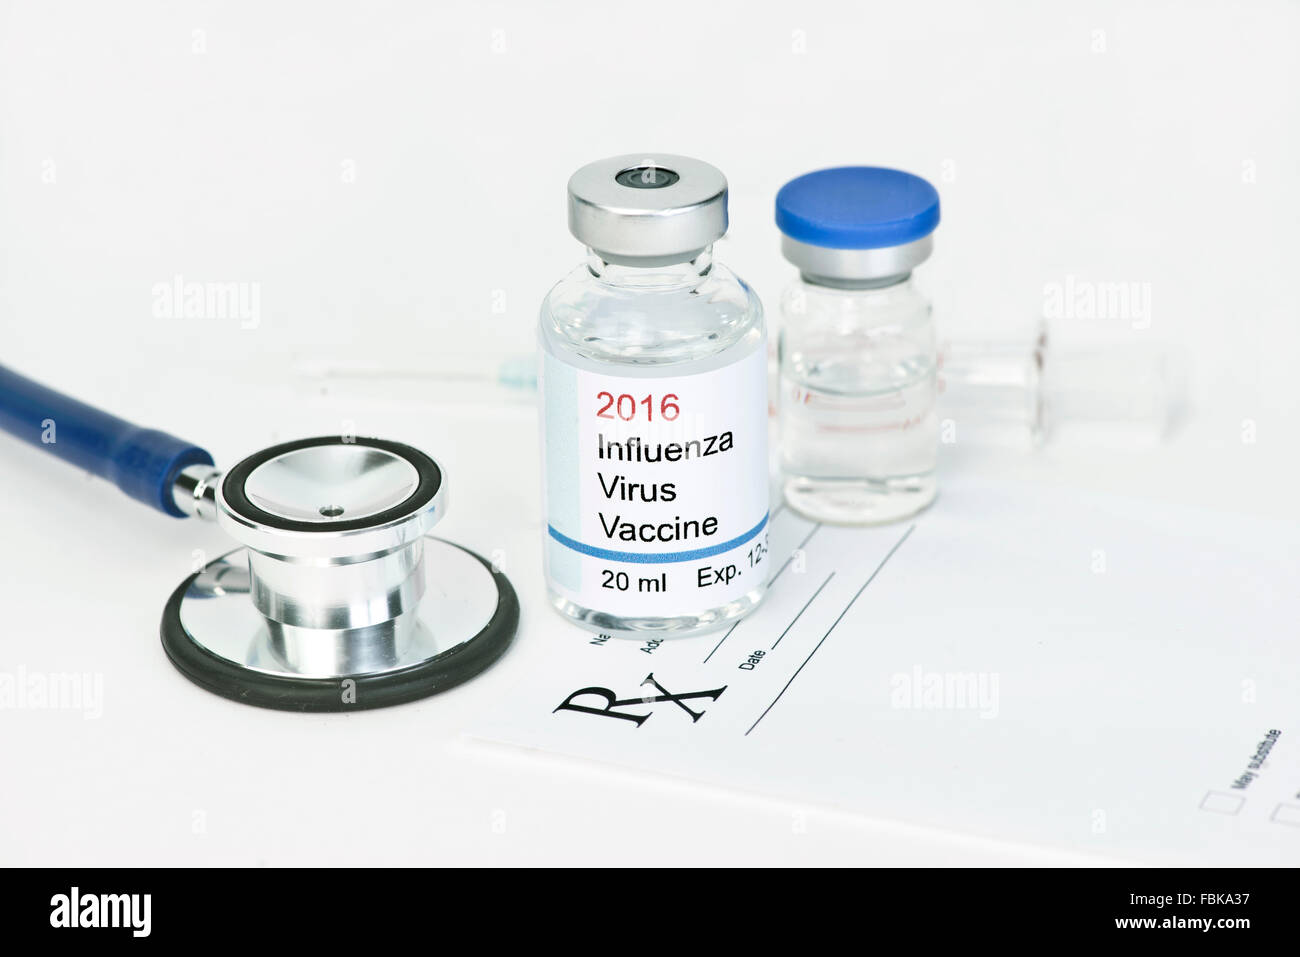 Vaccin contre la grippe 2016 télécopieur. Toutes les étiquettes et/ou documents sont fictifs. Les noms, numéros de série, les dates sont aléatoires et tout resembl Banque D'Images